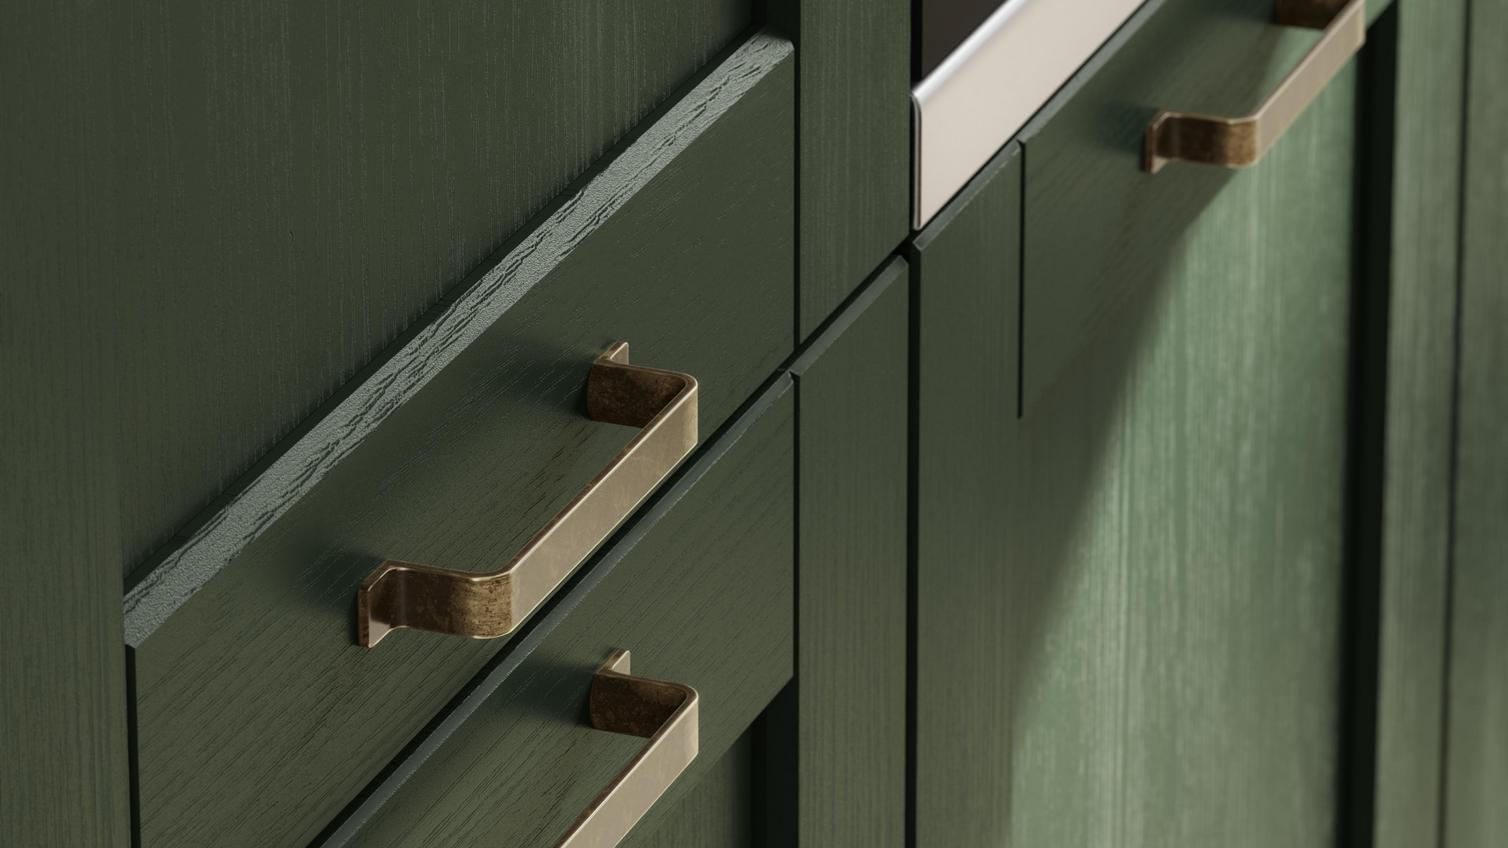 Metallic cabinet handles used with a textured green cupboard door